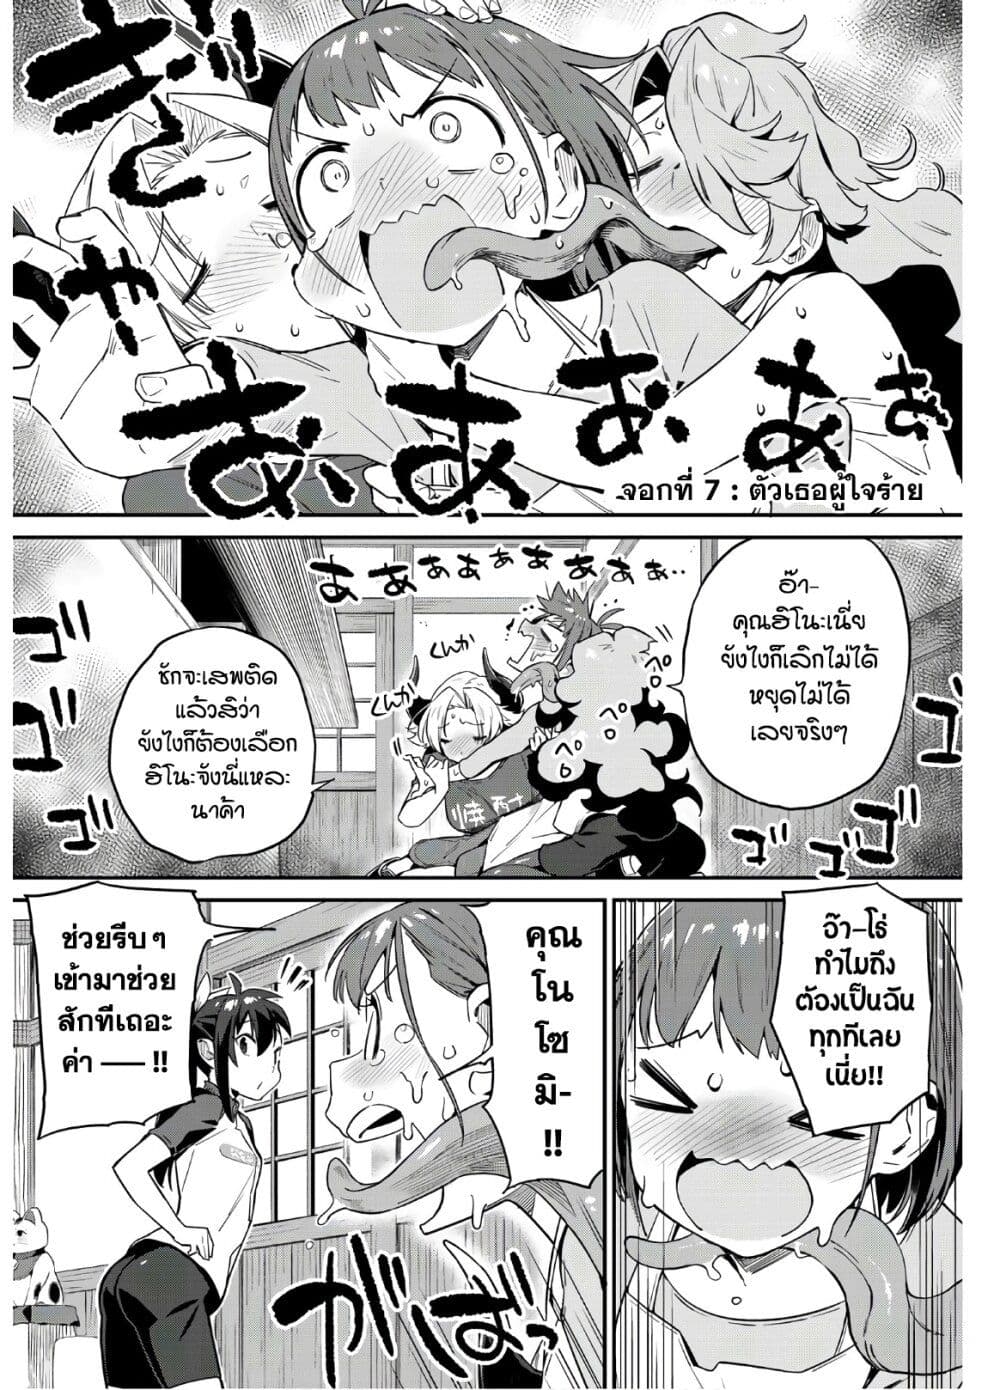 Youkai Izakaya non Bere ke 7 (1)